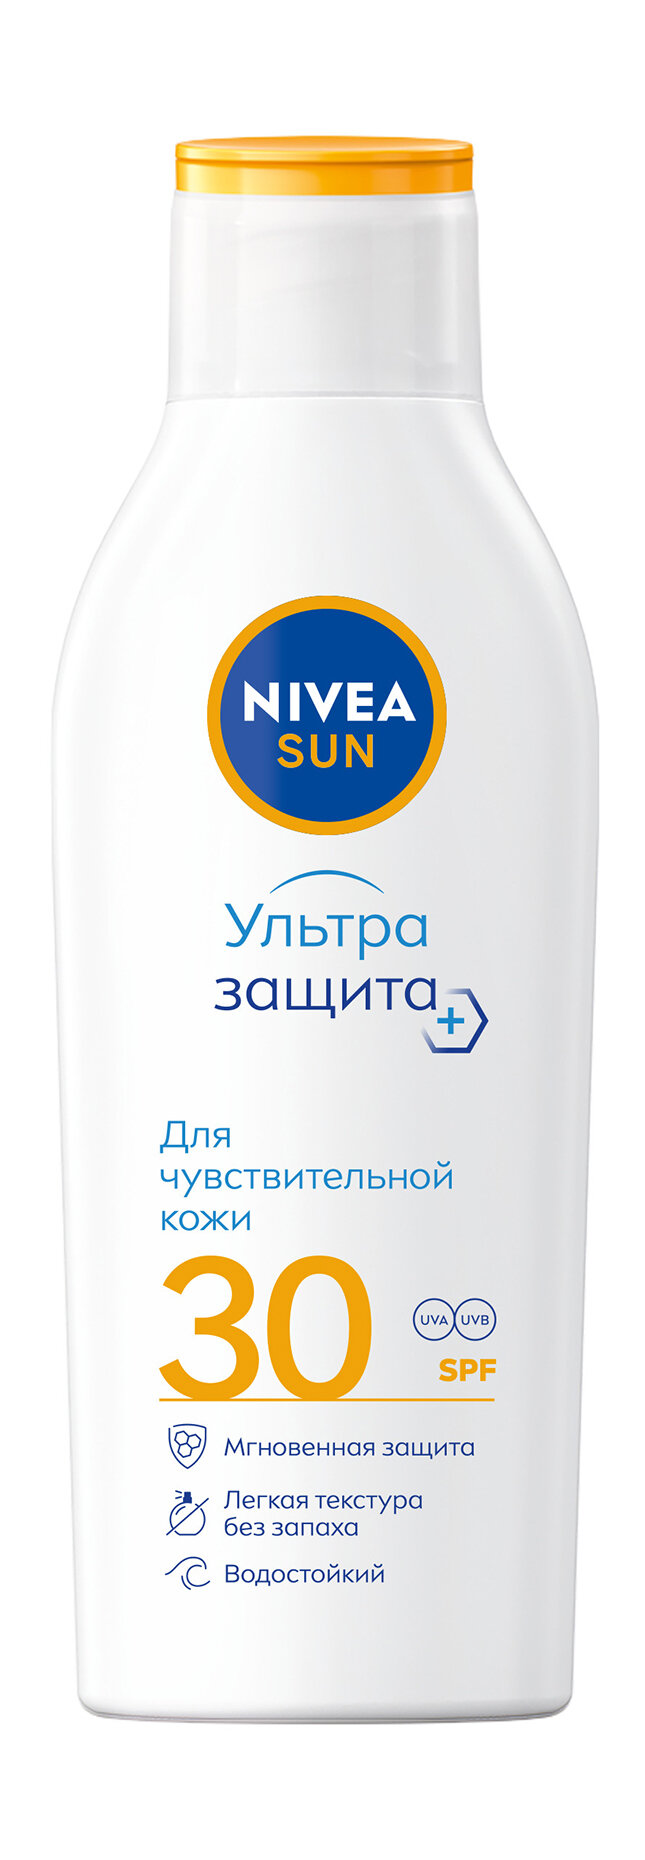 NIVEA Лосьон солнцезащитный для чувствительной кожи SPF 30, 200 мл